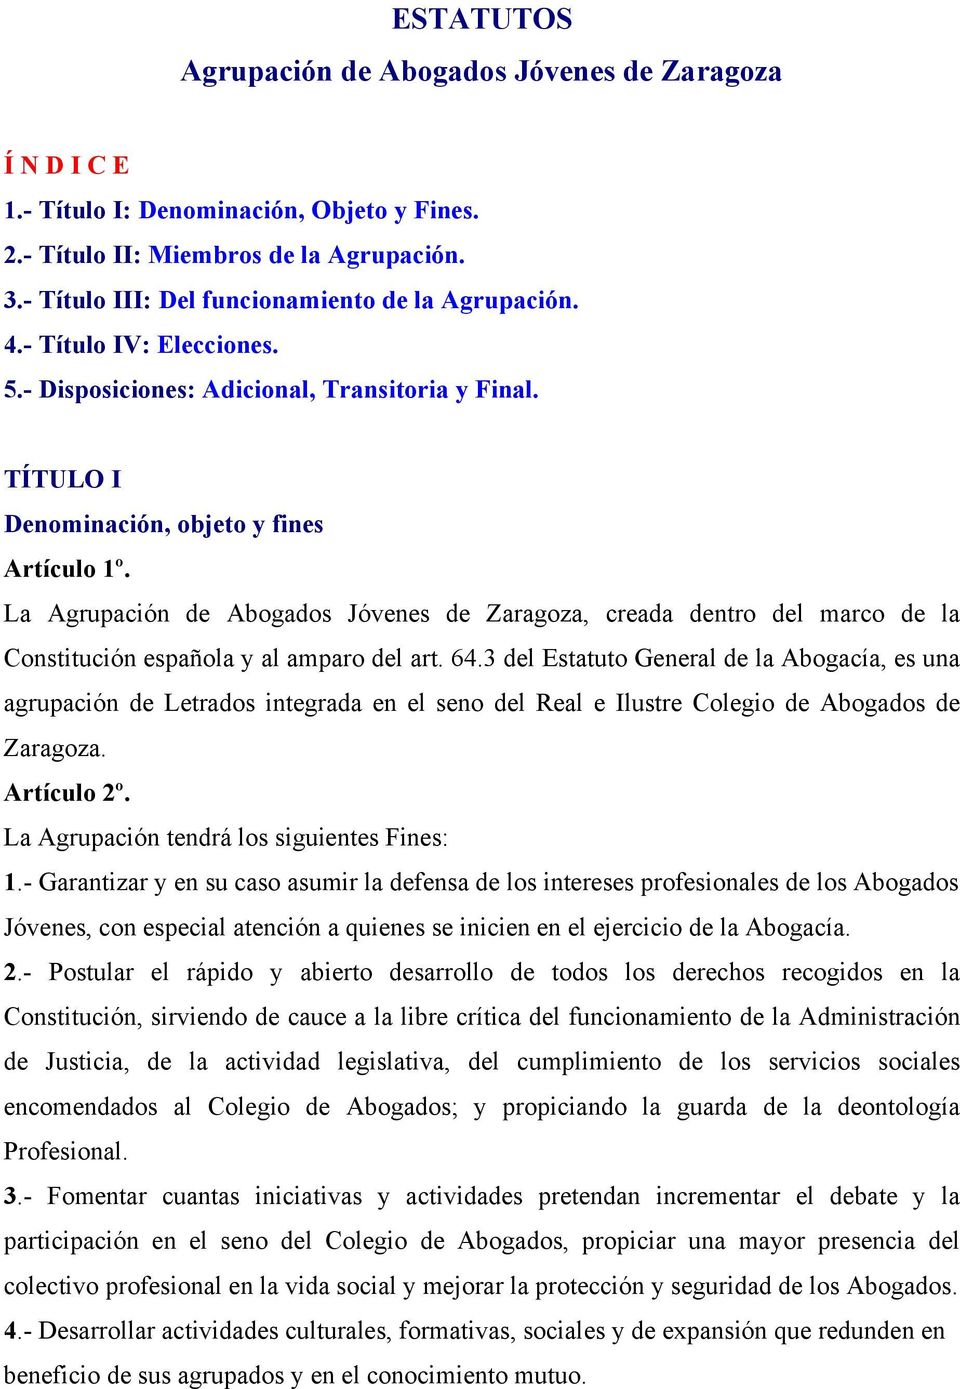 La Agrupación de Abogados Jóvenes de Zaragoza, creada dentro del marco de la Constitución española y al amparo del art. 64.